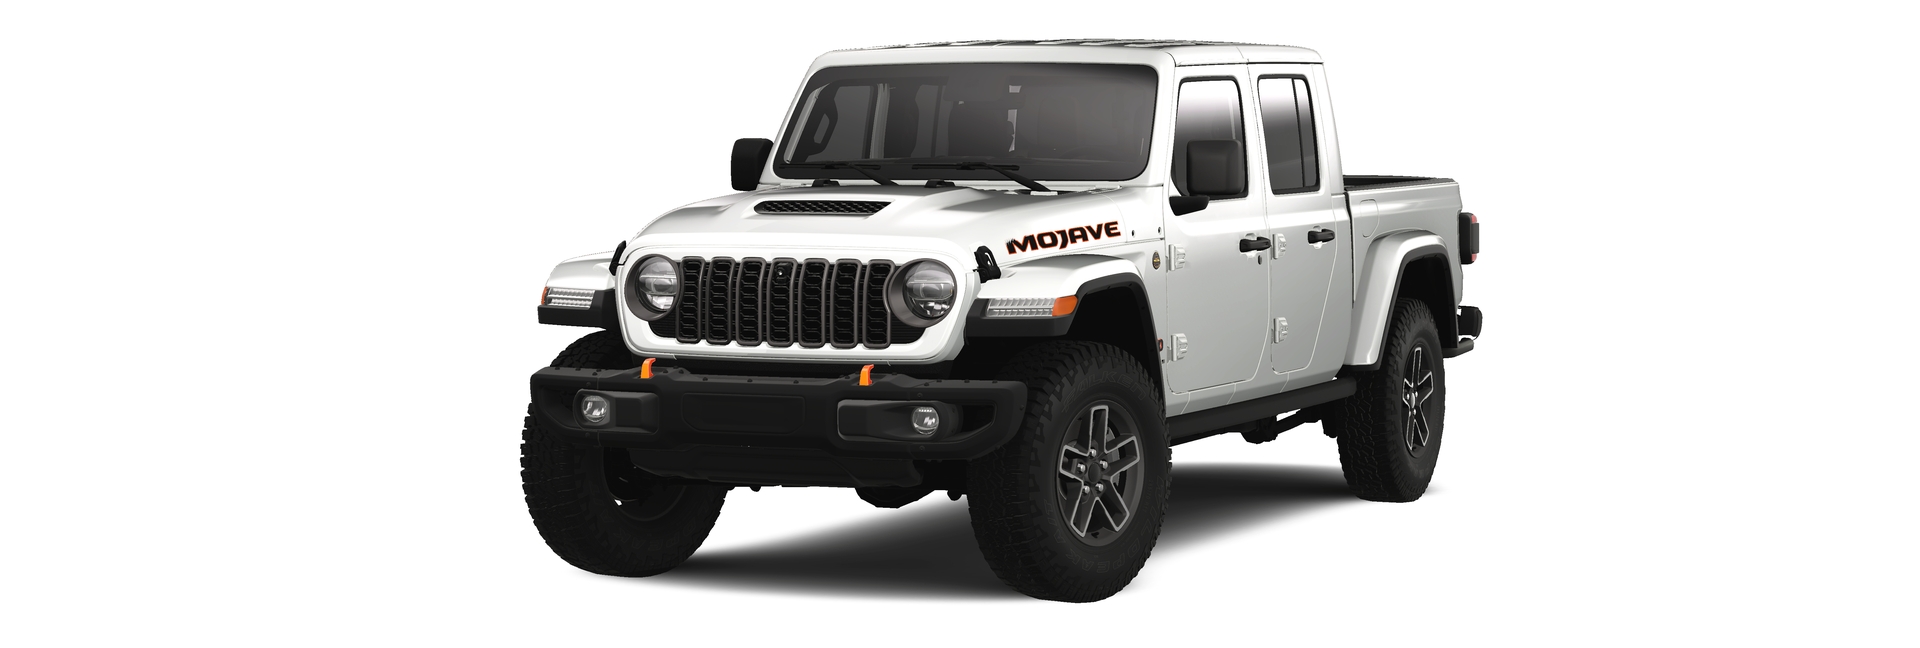 Jeep Gladiator Mojave X 